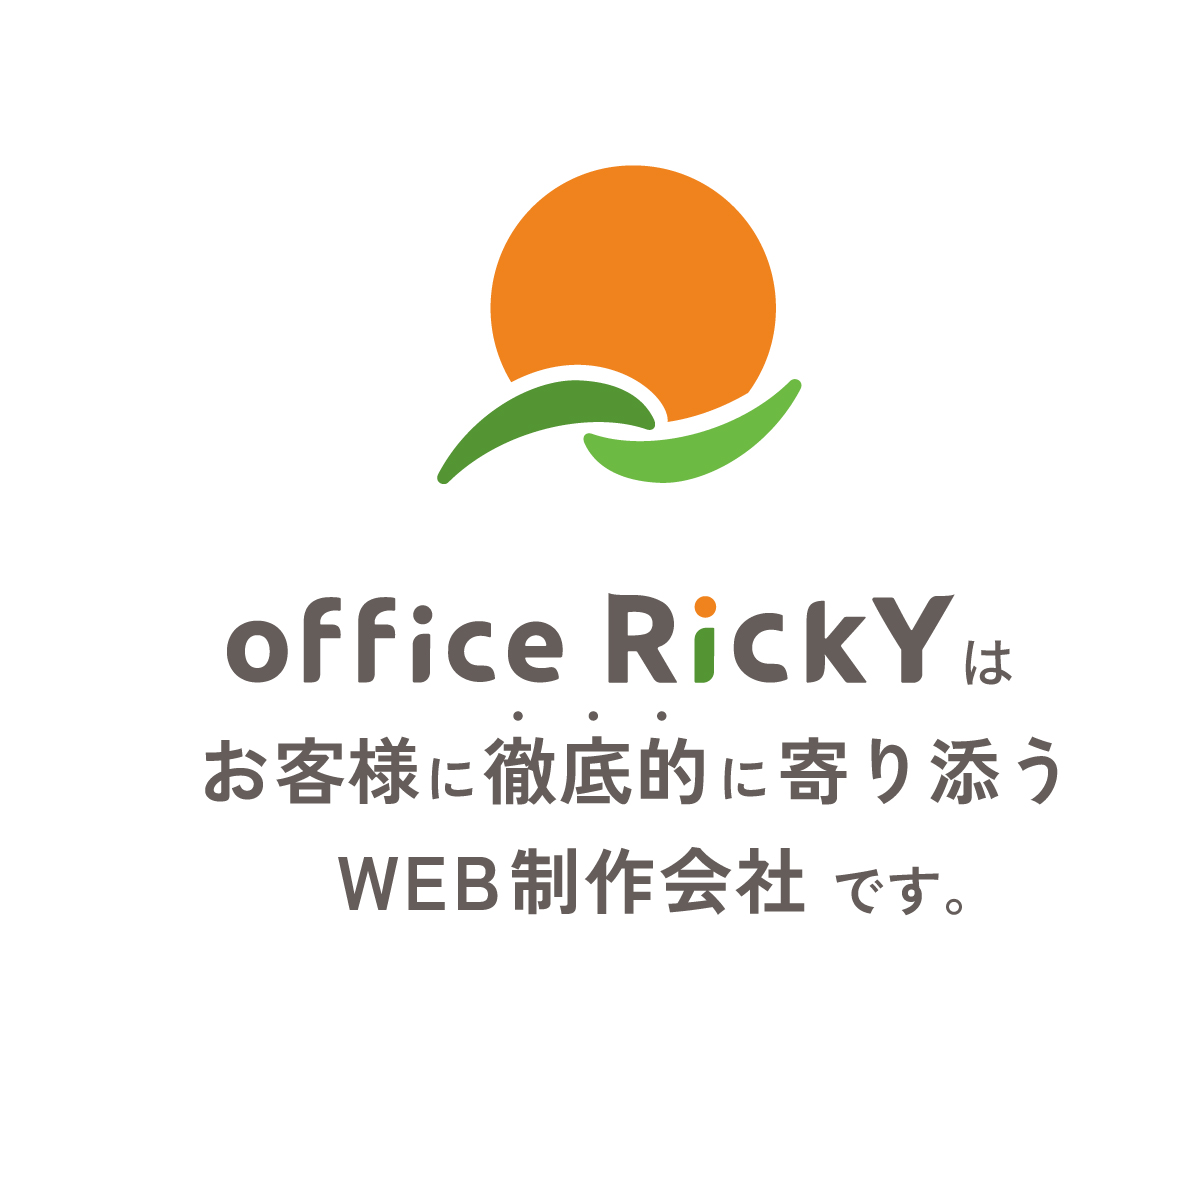 office rickyはお客様に徹底的に寄り添うWEB制作会社です